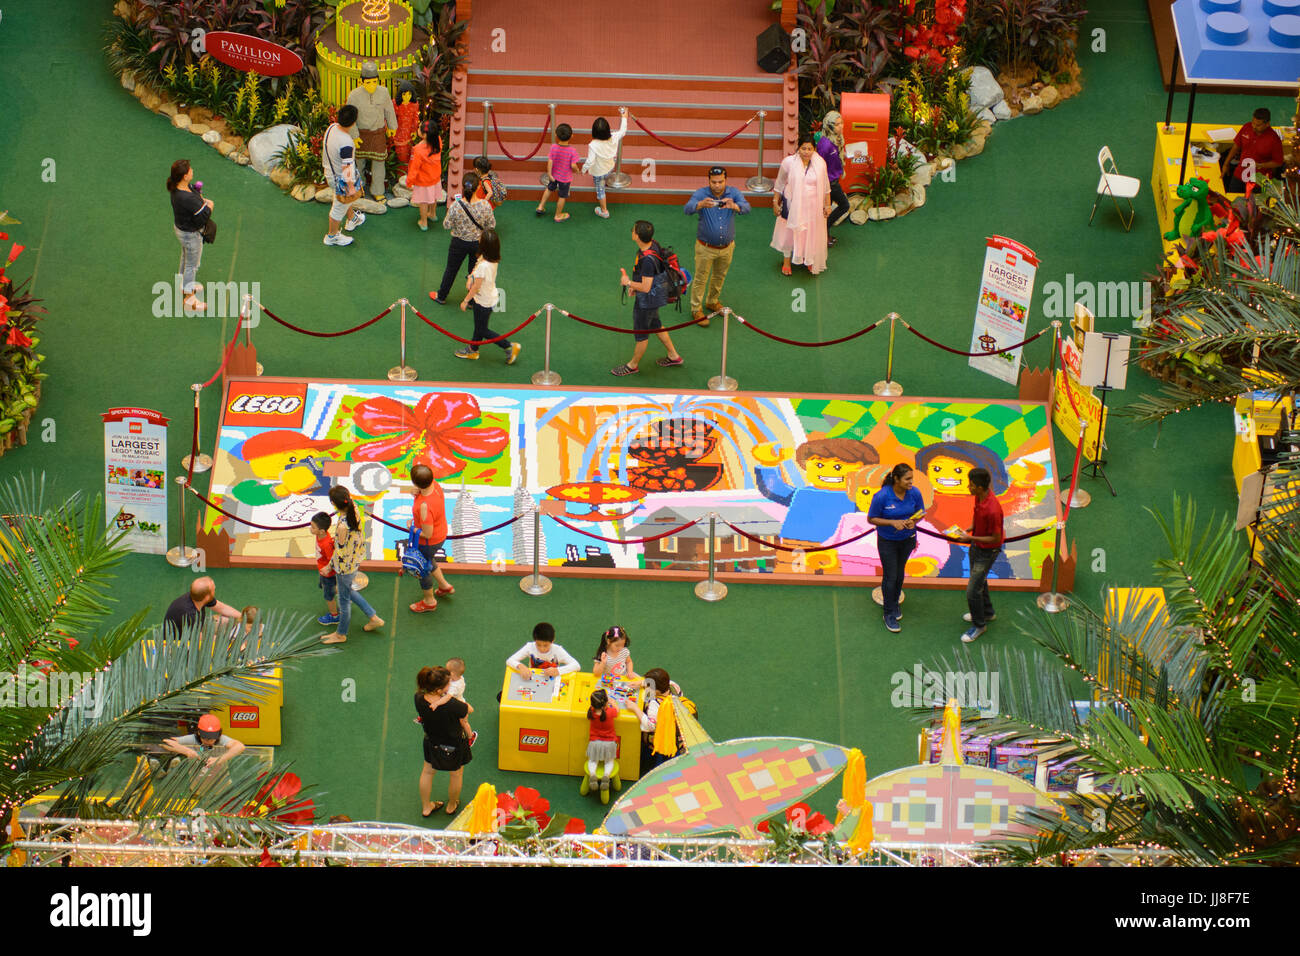 Fotos von der Veranstaltung "Let's Go Raya" Lego im Einkaufszentrum Pavillion KL. Diese Veranstaltung ist Teil des muslimischen Fastenmonats Ramadan feiern. T Stockfoto